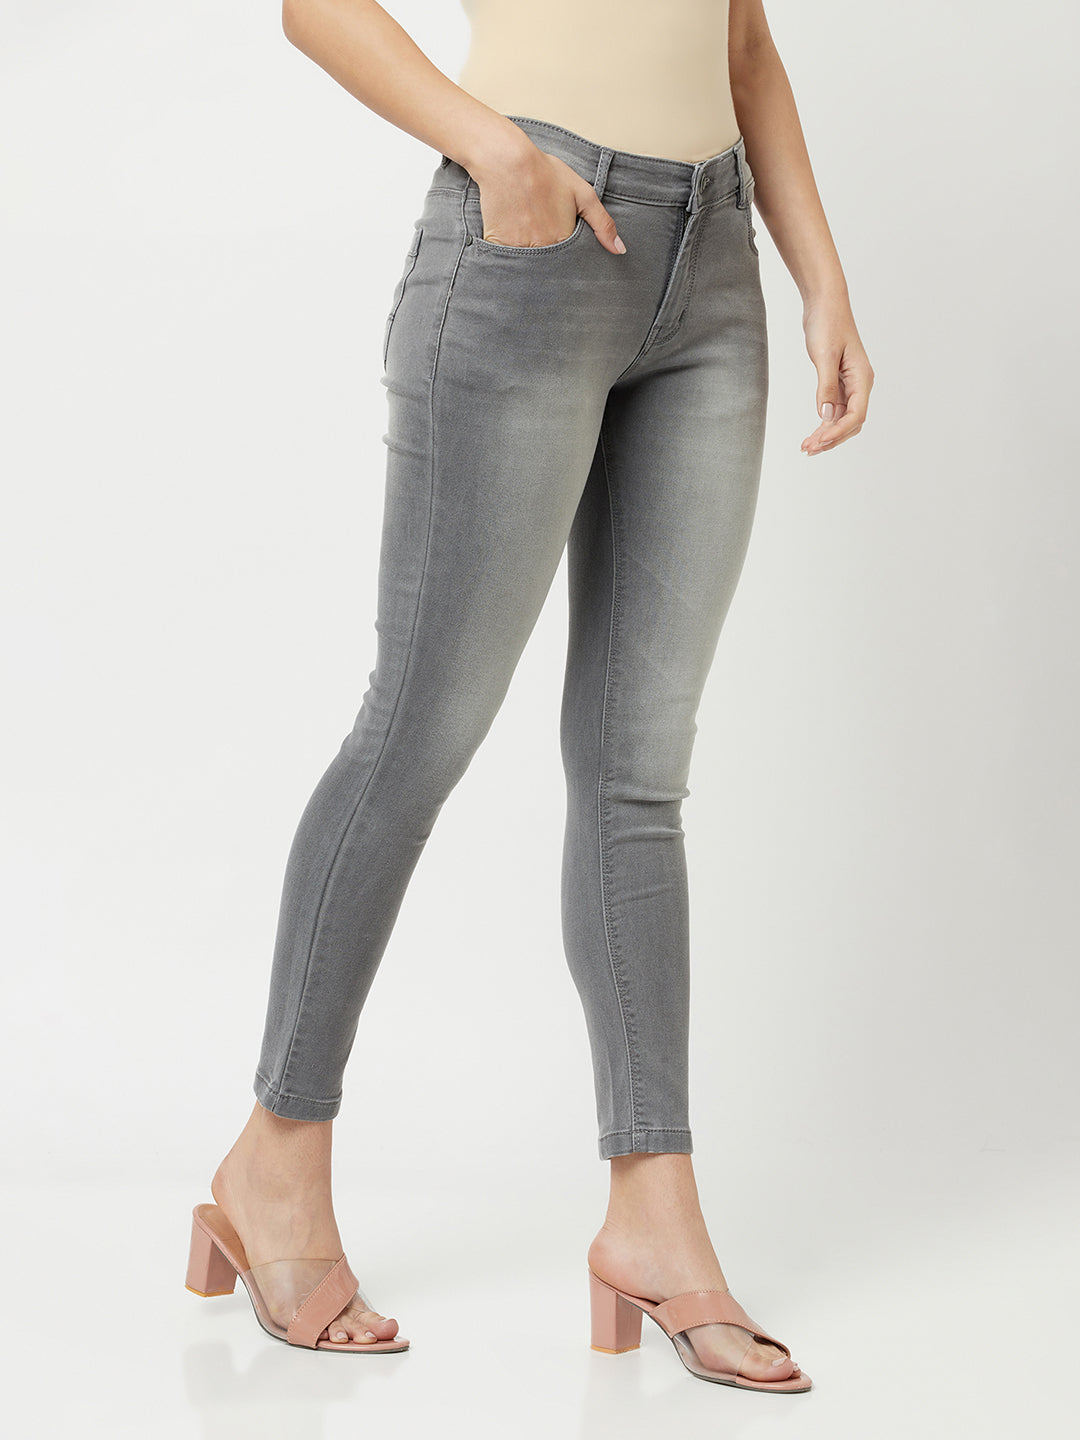 Light Grey Faded Jeans-Women Jeans-Crimsoune Club